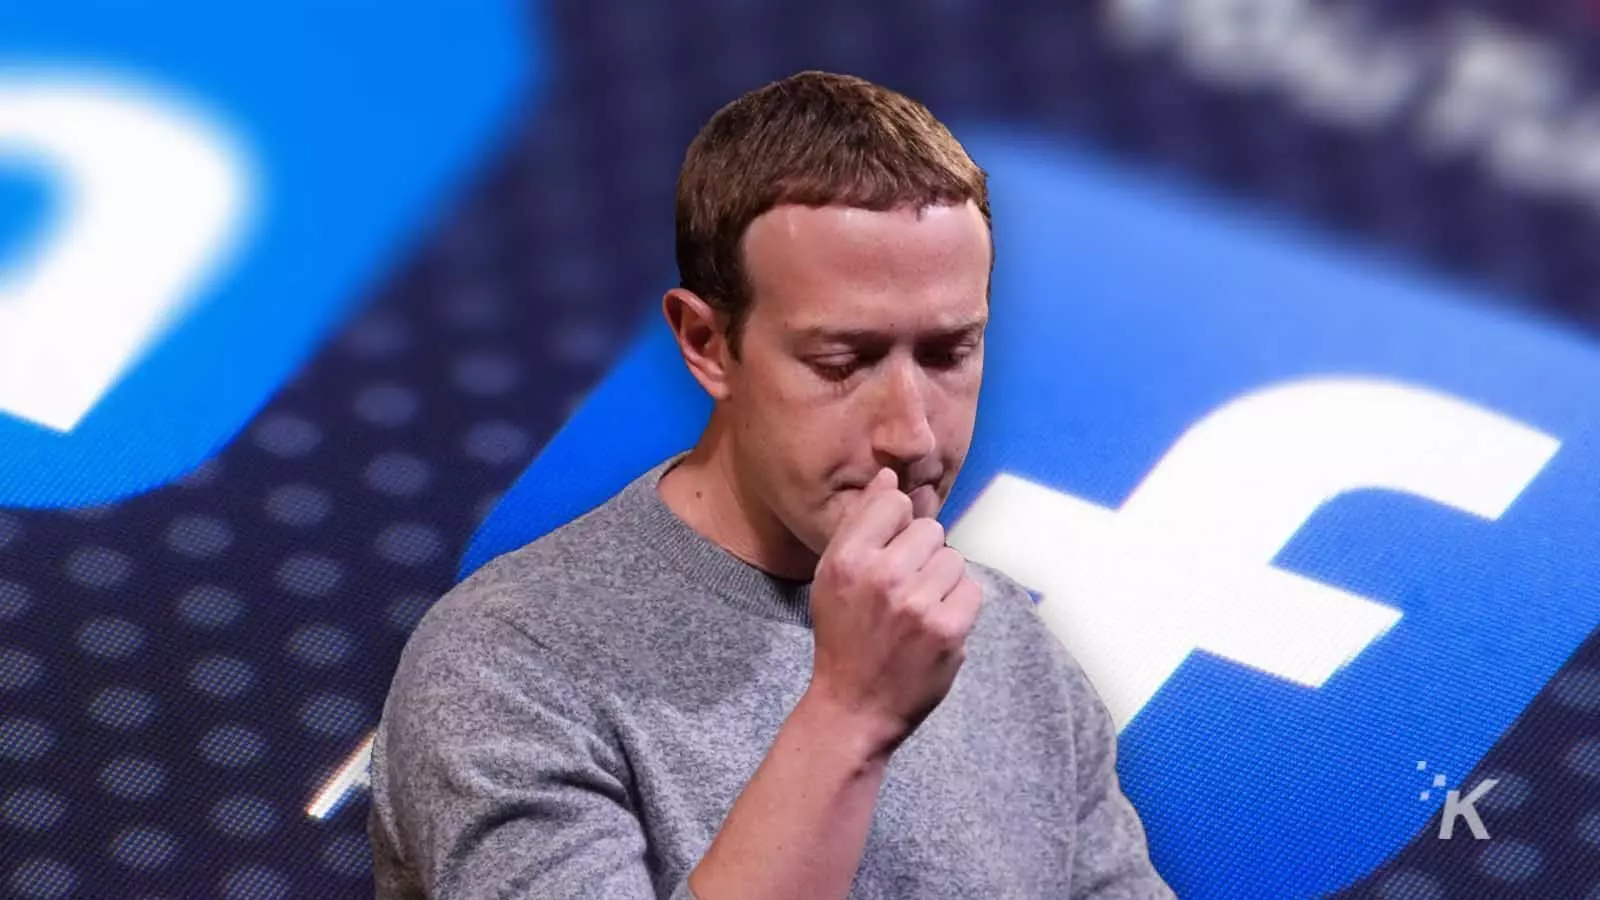 Facebook डाउन होने से जकरबर्ग को भारी नुकसान, हर घंटे 8700 करोड़ रुपये का नुकसान, 6 घंटों में इतने अरब डॉलर का घाटा